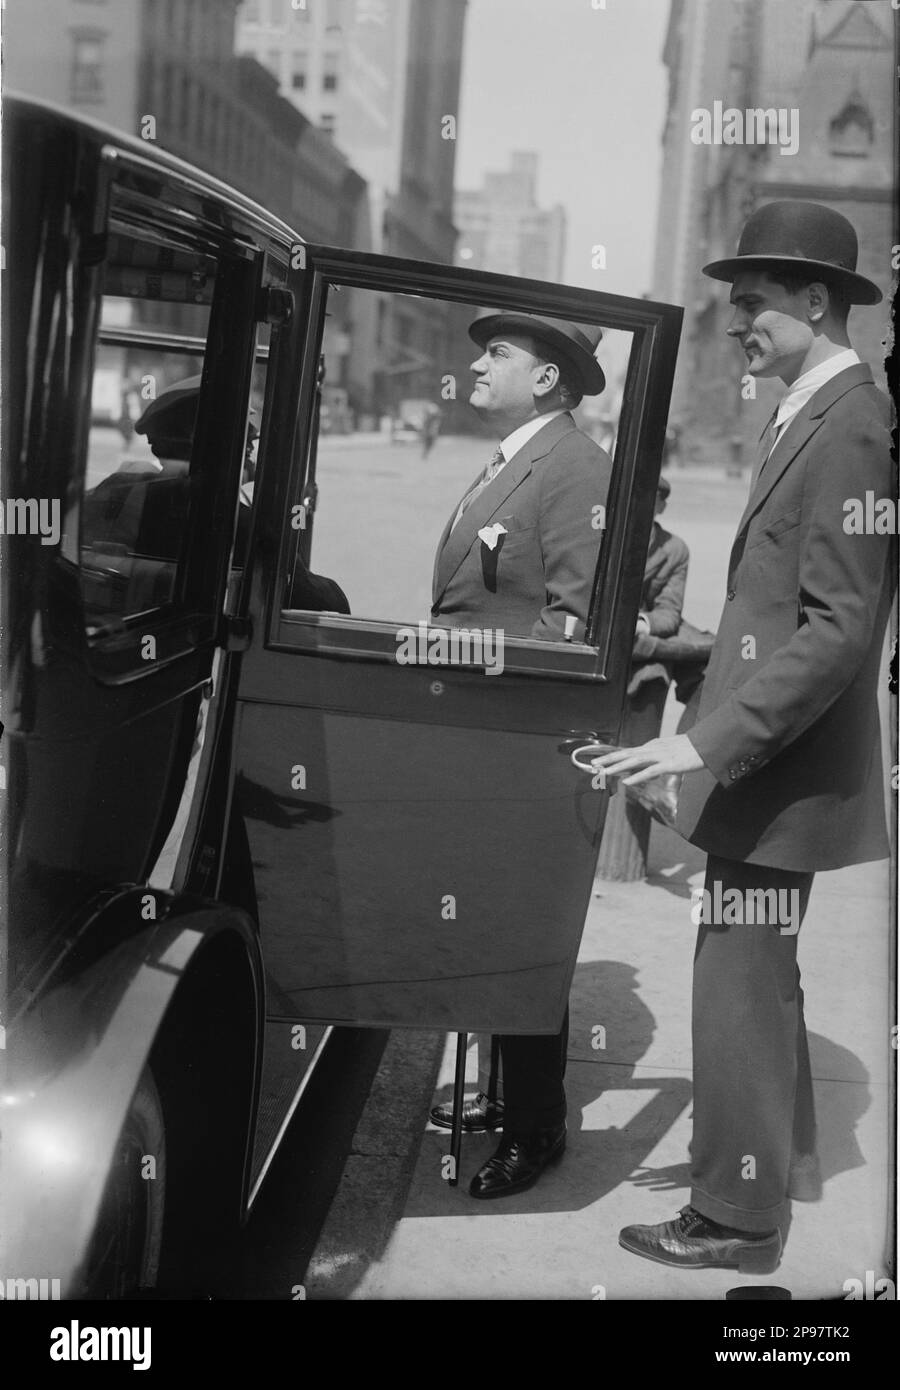 1915 Ca, New York , USA : der italienische Opernsänger Tenore ENRICO CARUSO ( Napoli 1873 - 1921 ) mit Manager BRUNO ZIRATO am Bühneneingang des Metropolitan Opera House Theatre . MUSICA CLASSICA - KLASSISCH - MUSIK - Porträt - Rituto - cappello - Hut - Kragen - Cravatta - Bastone da passeggio - Cane - TENORE - OPÉRA LIRICA - TEATRO - THEATER - Auto - Automobil ---- Archivio GBB Stockfoto